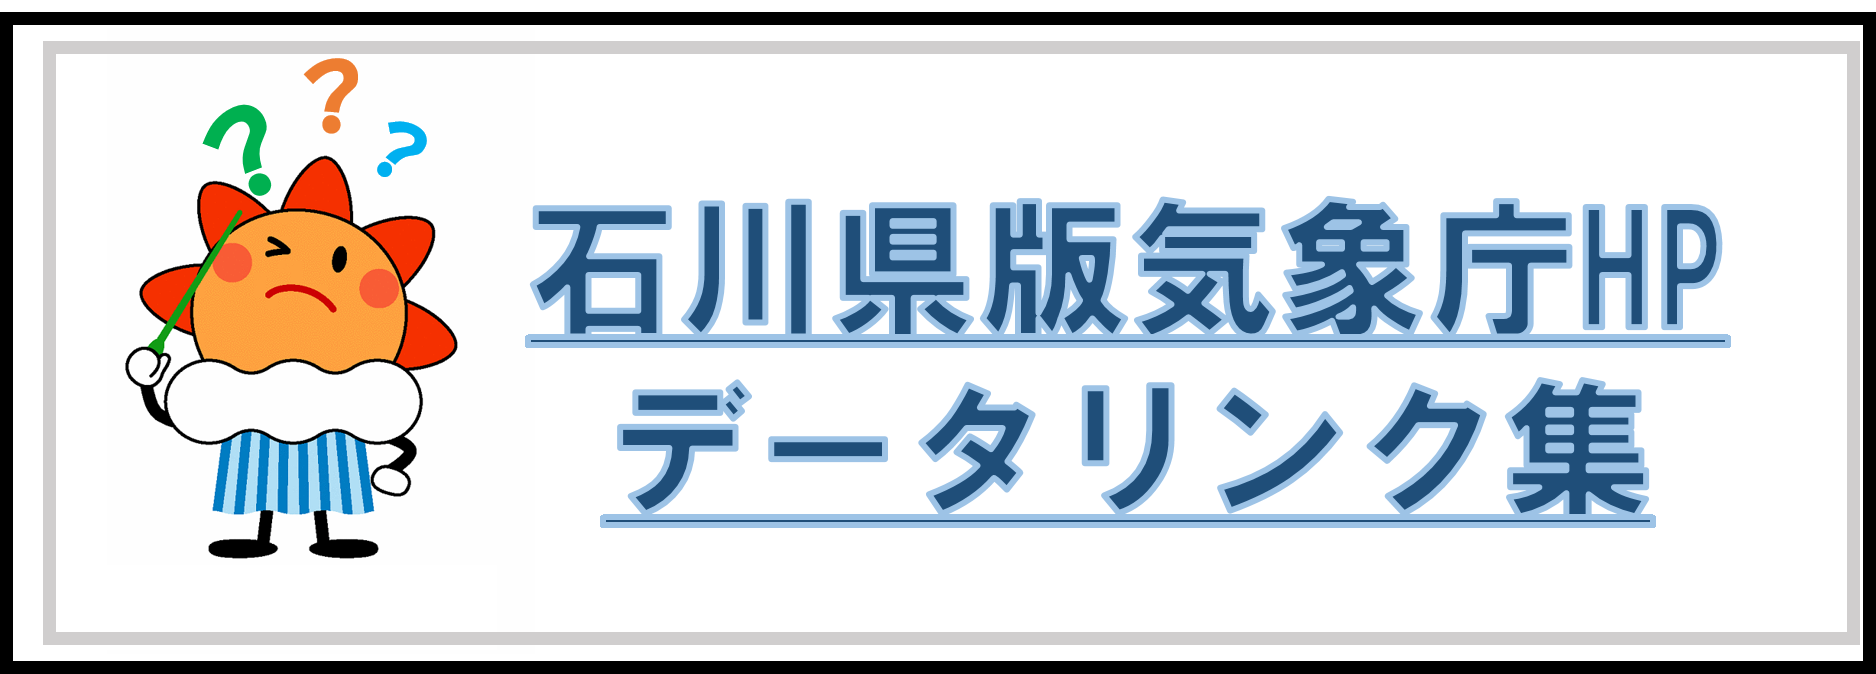 石川県のデータリンク集